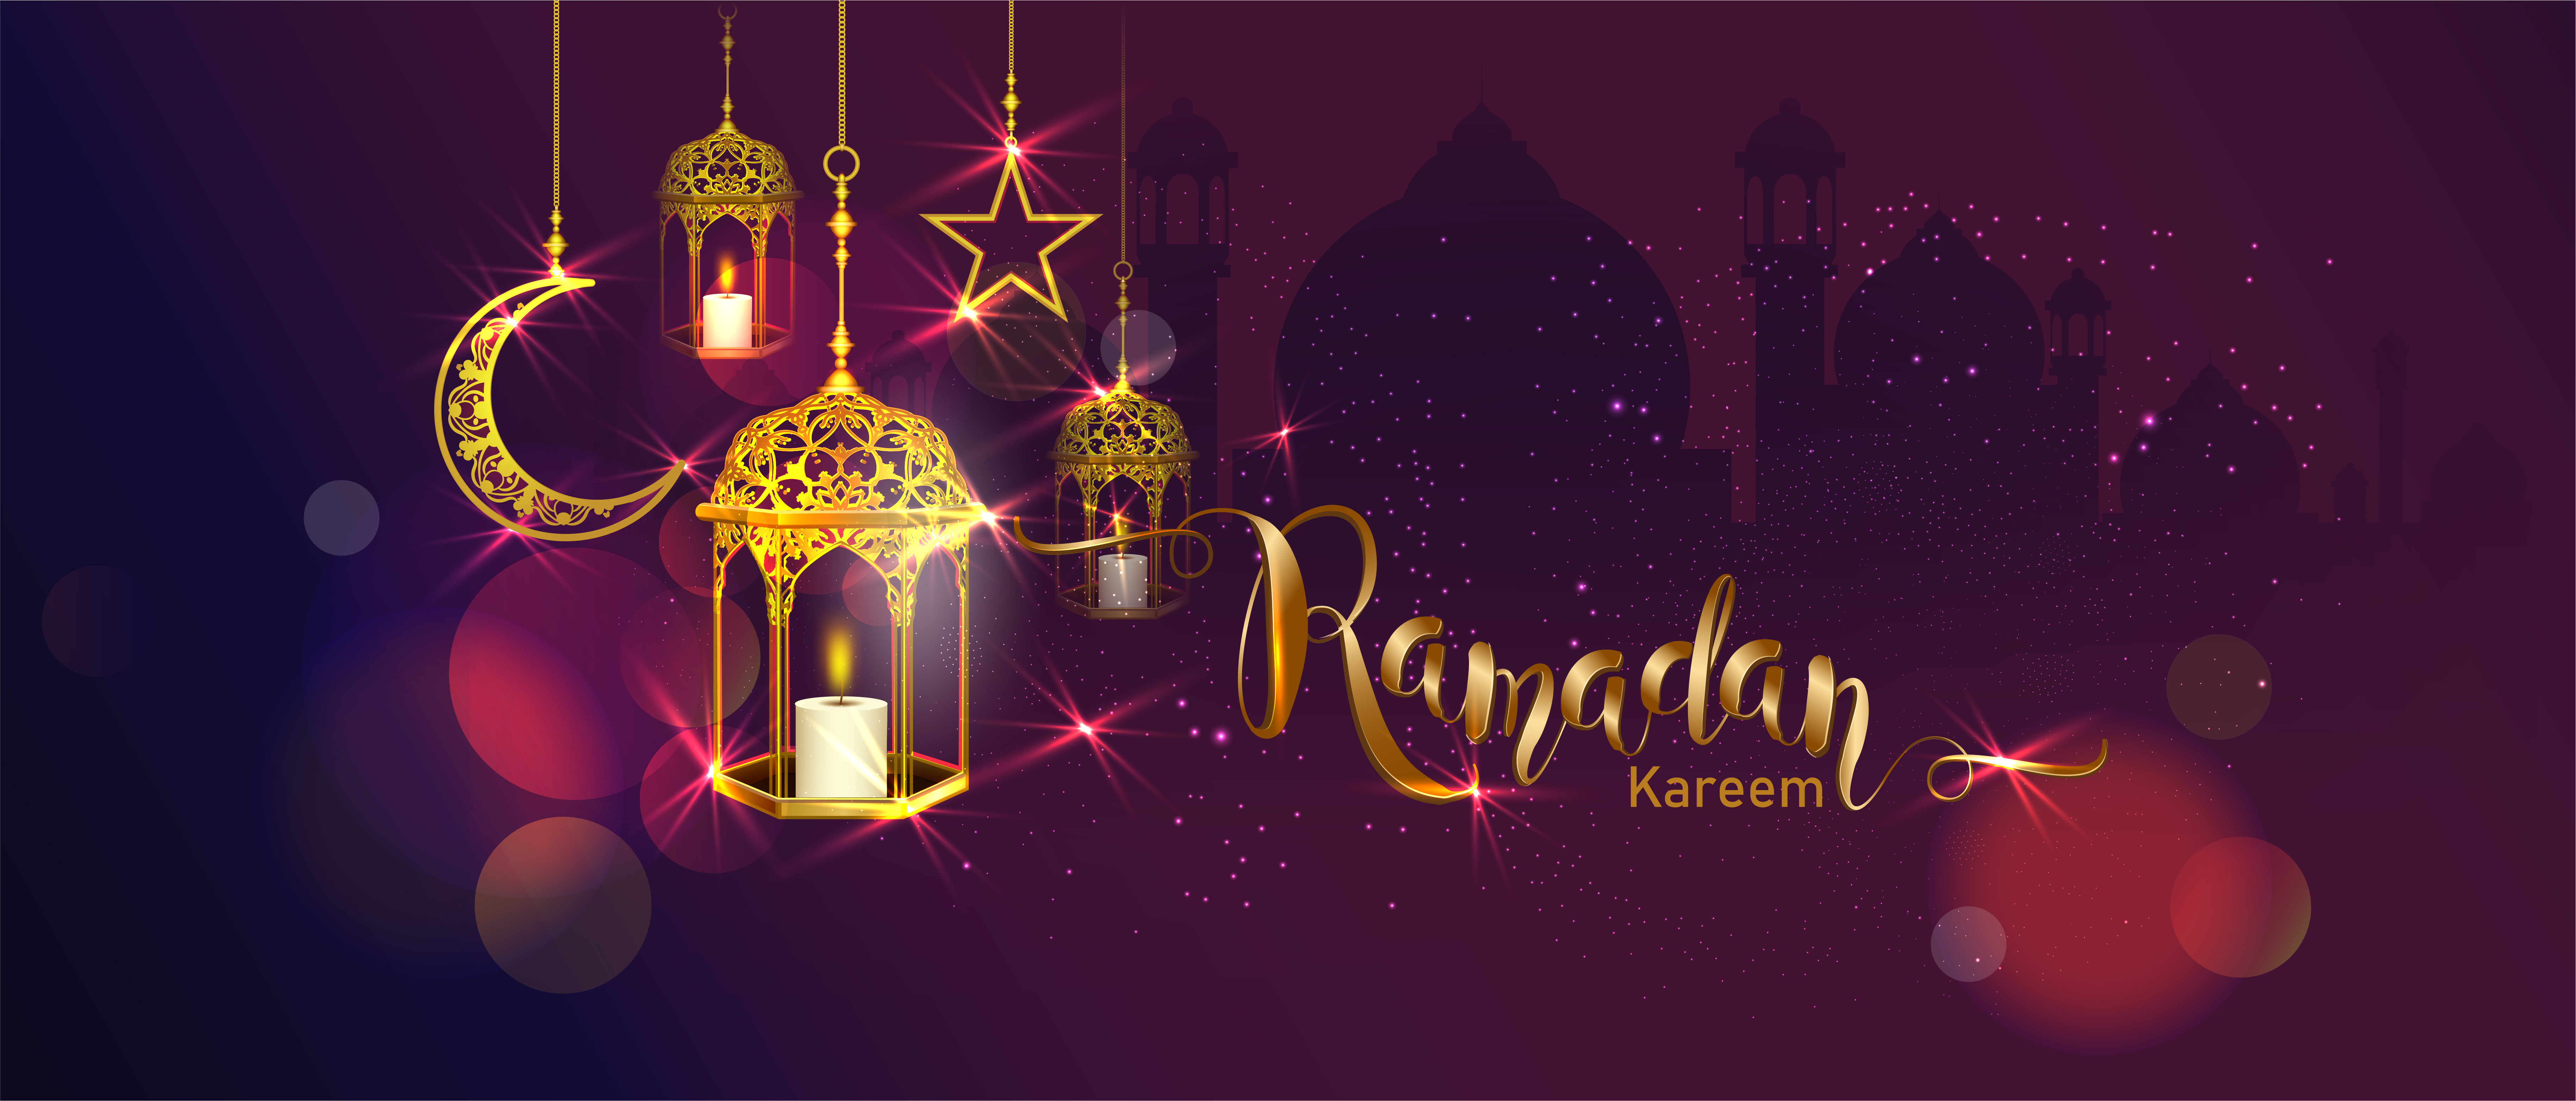 Ramadan 4k Ultra HD Wallpaper